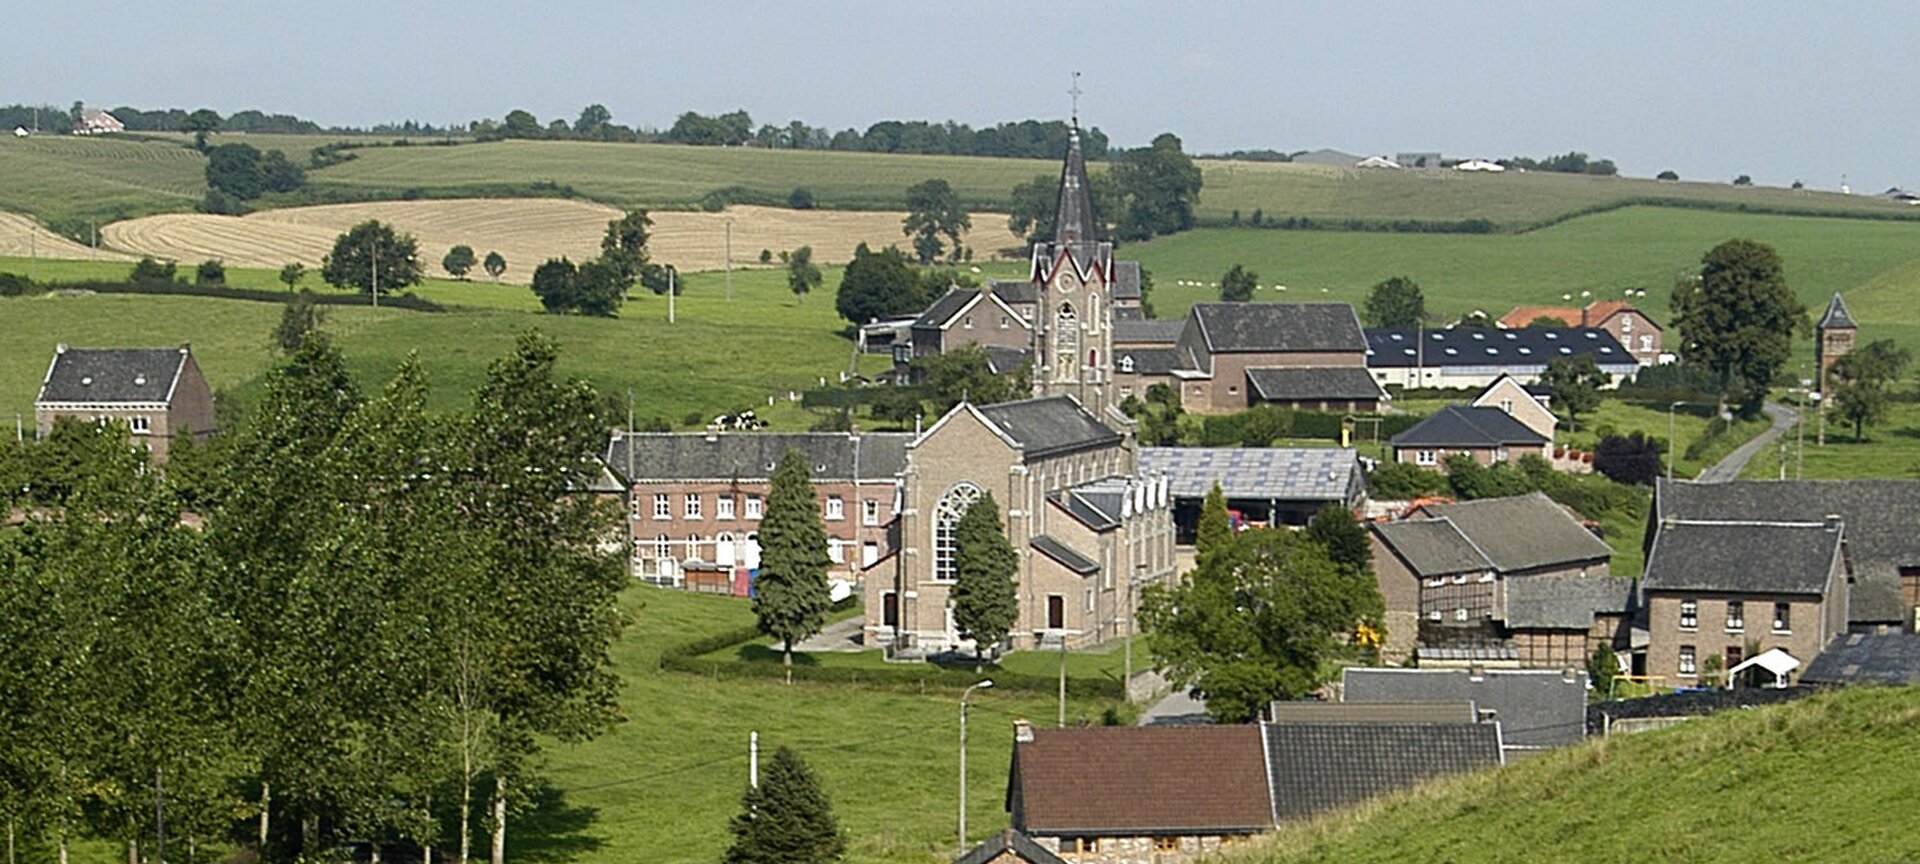 Sint-Heribertuskerk Remersdaal - Remersdaal kerk